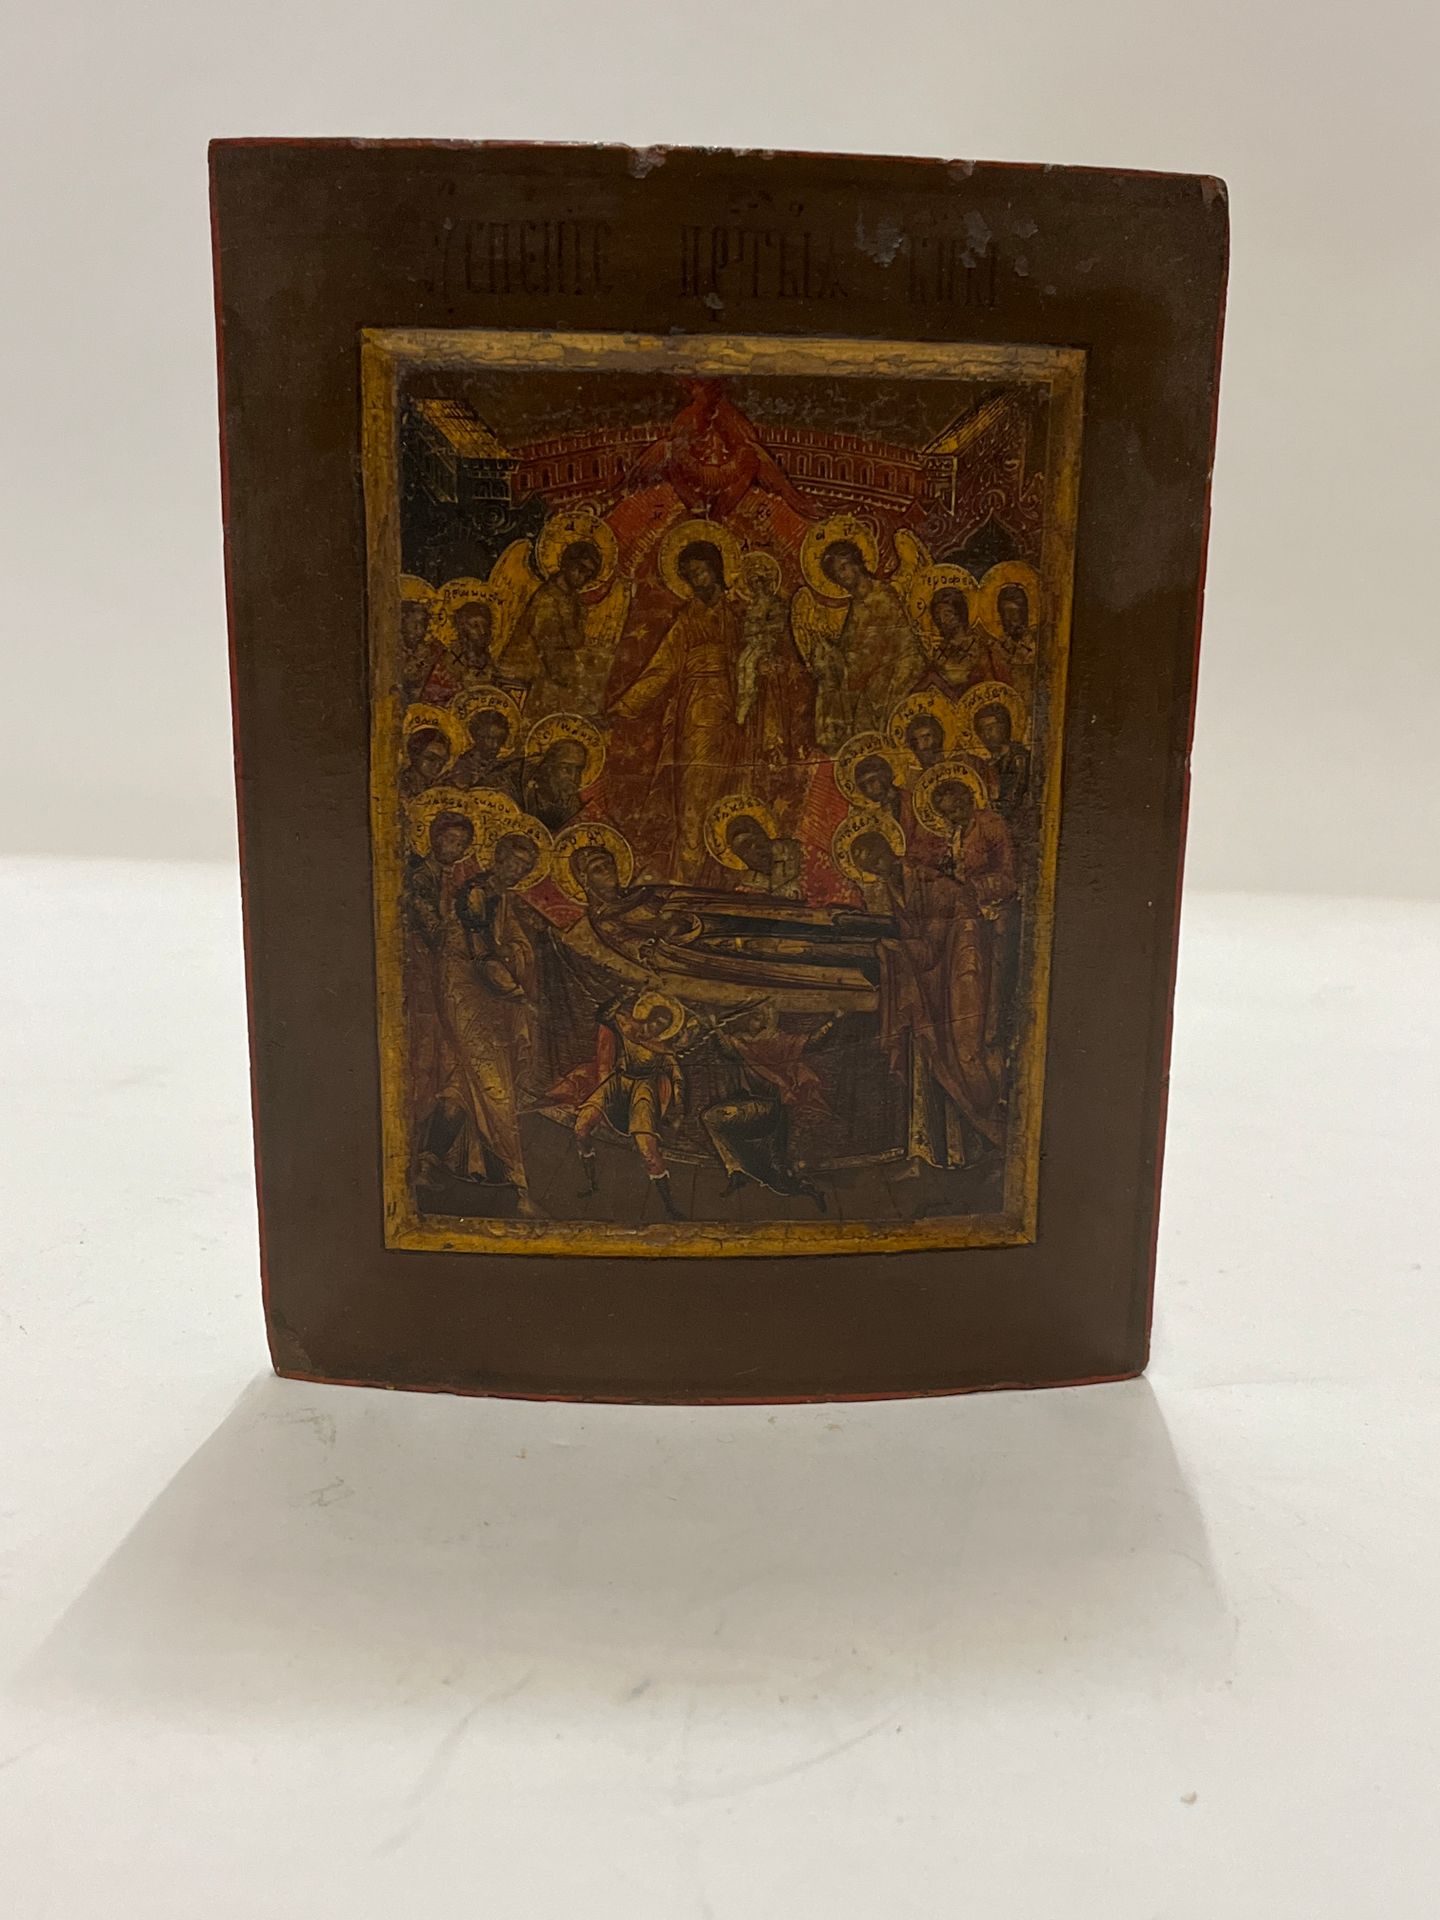 Null 圣像
圣母降临
俄罗斯，18 世纪末 19 世纪初
20.5 x 16 厘米